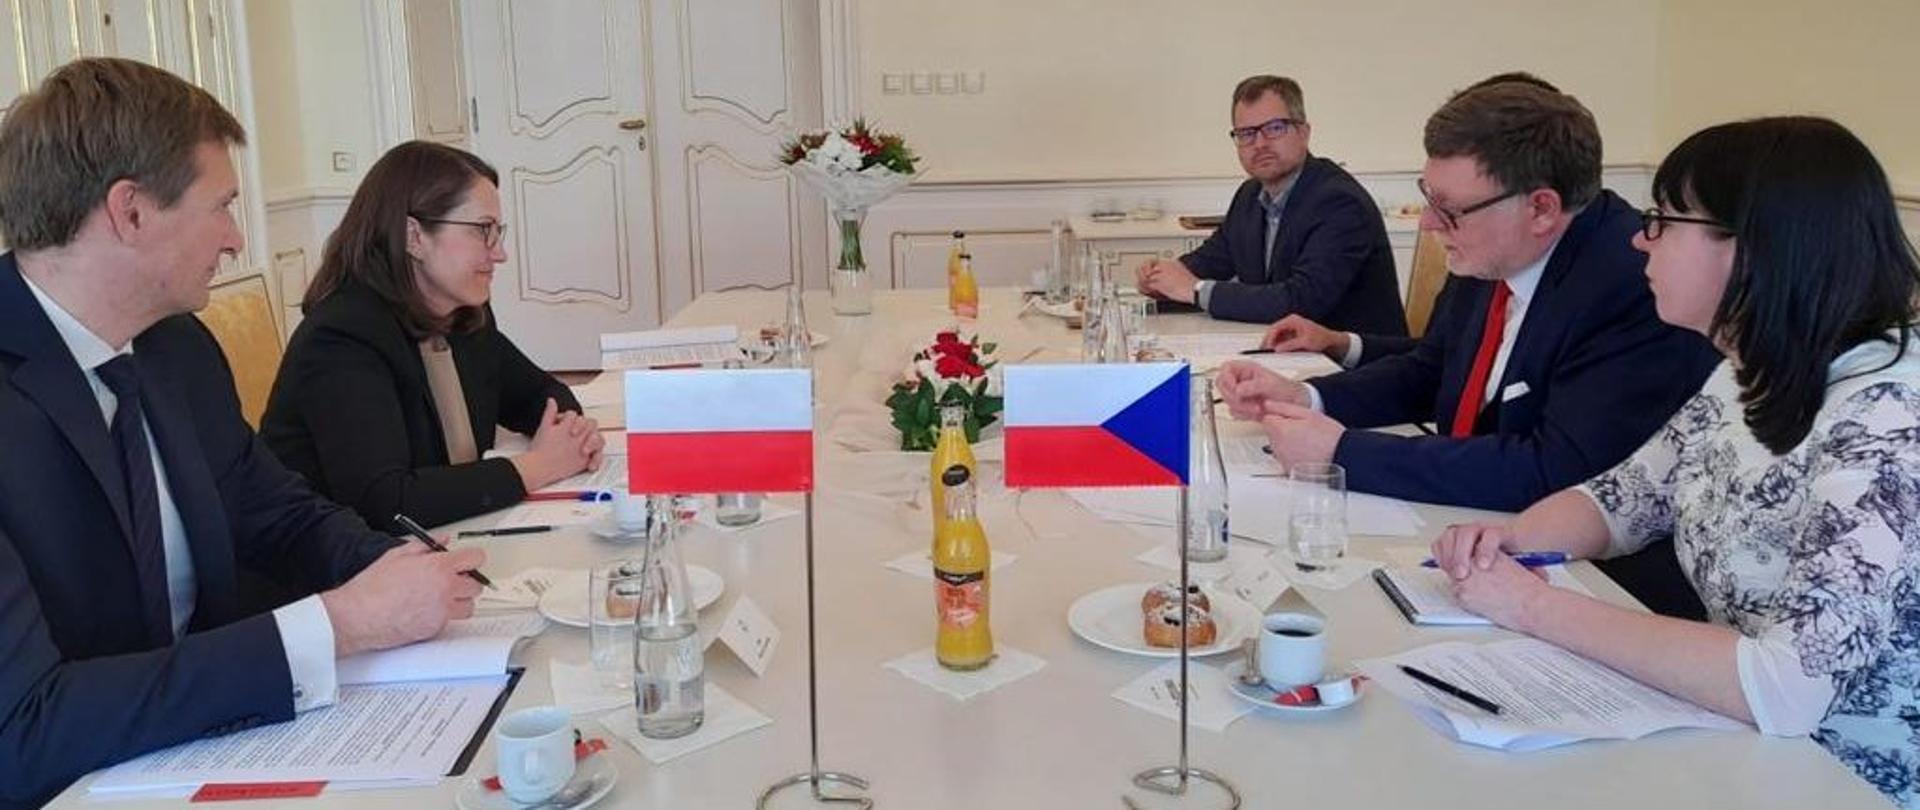 Minister Magdalena Rzeczkowska podczas spotkania z delegacją czeską, przy stole, z filiżankami i flagami Polski i Czech